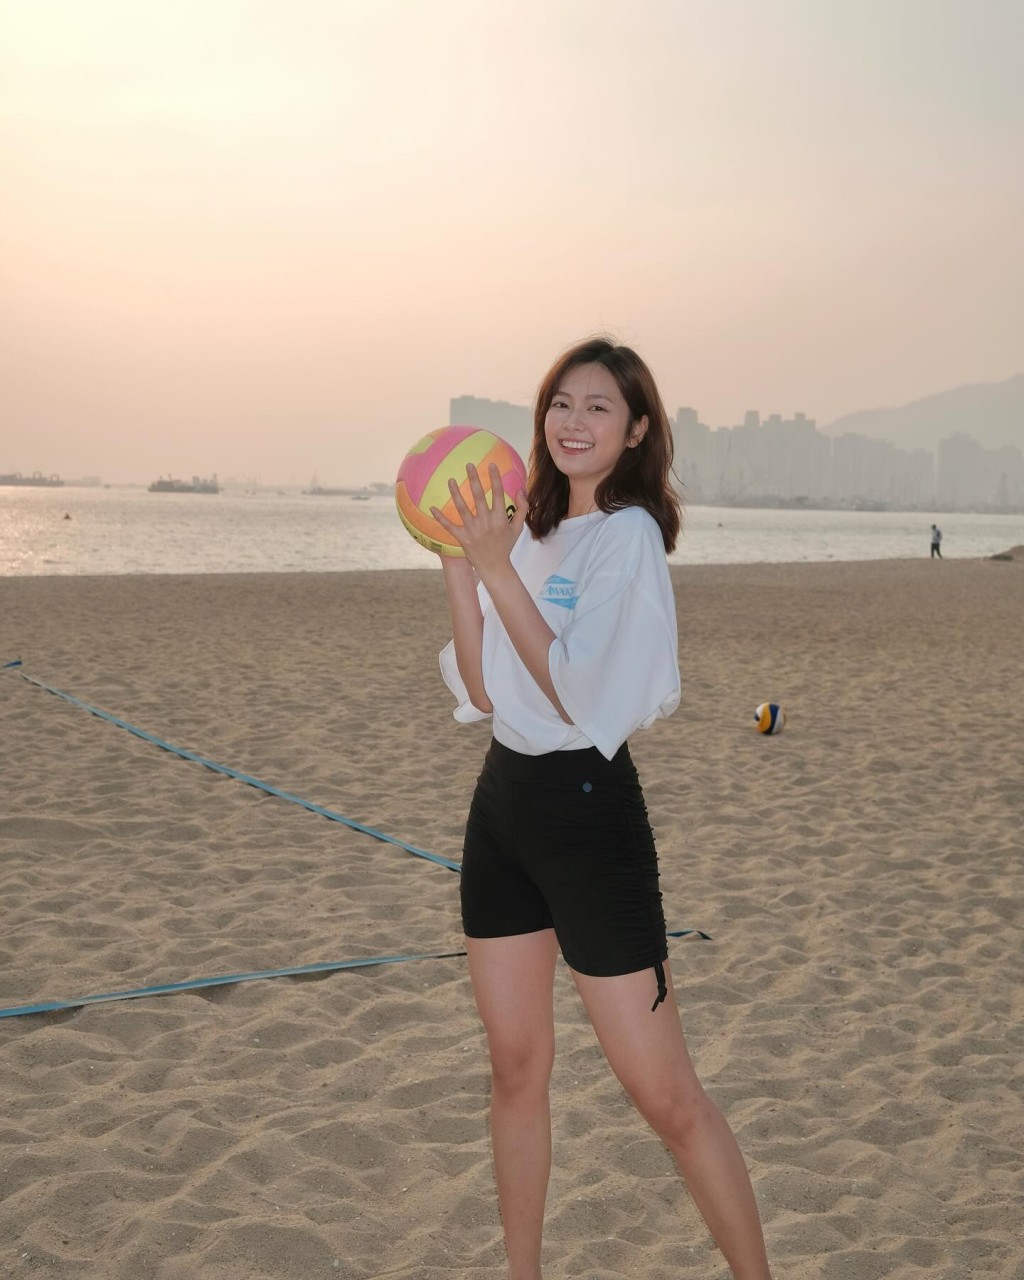 原来当日游嘉欣去了沙滩打排球。